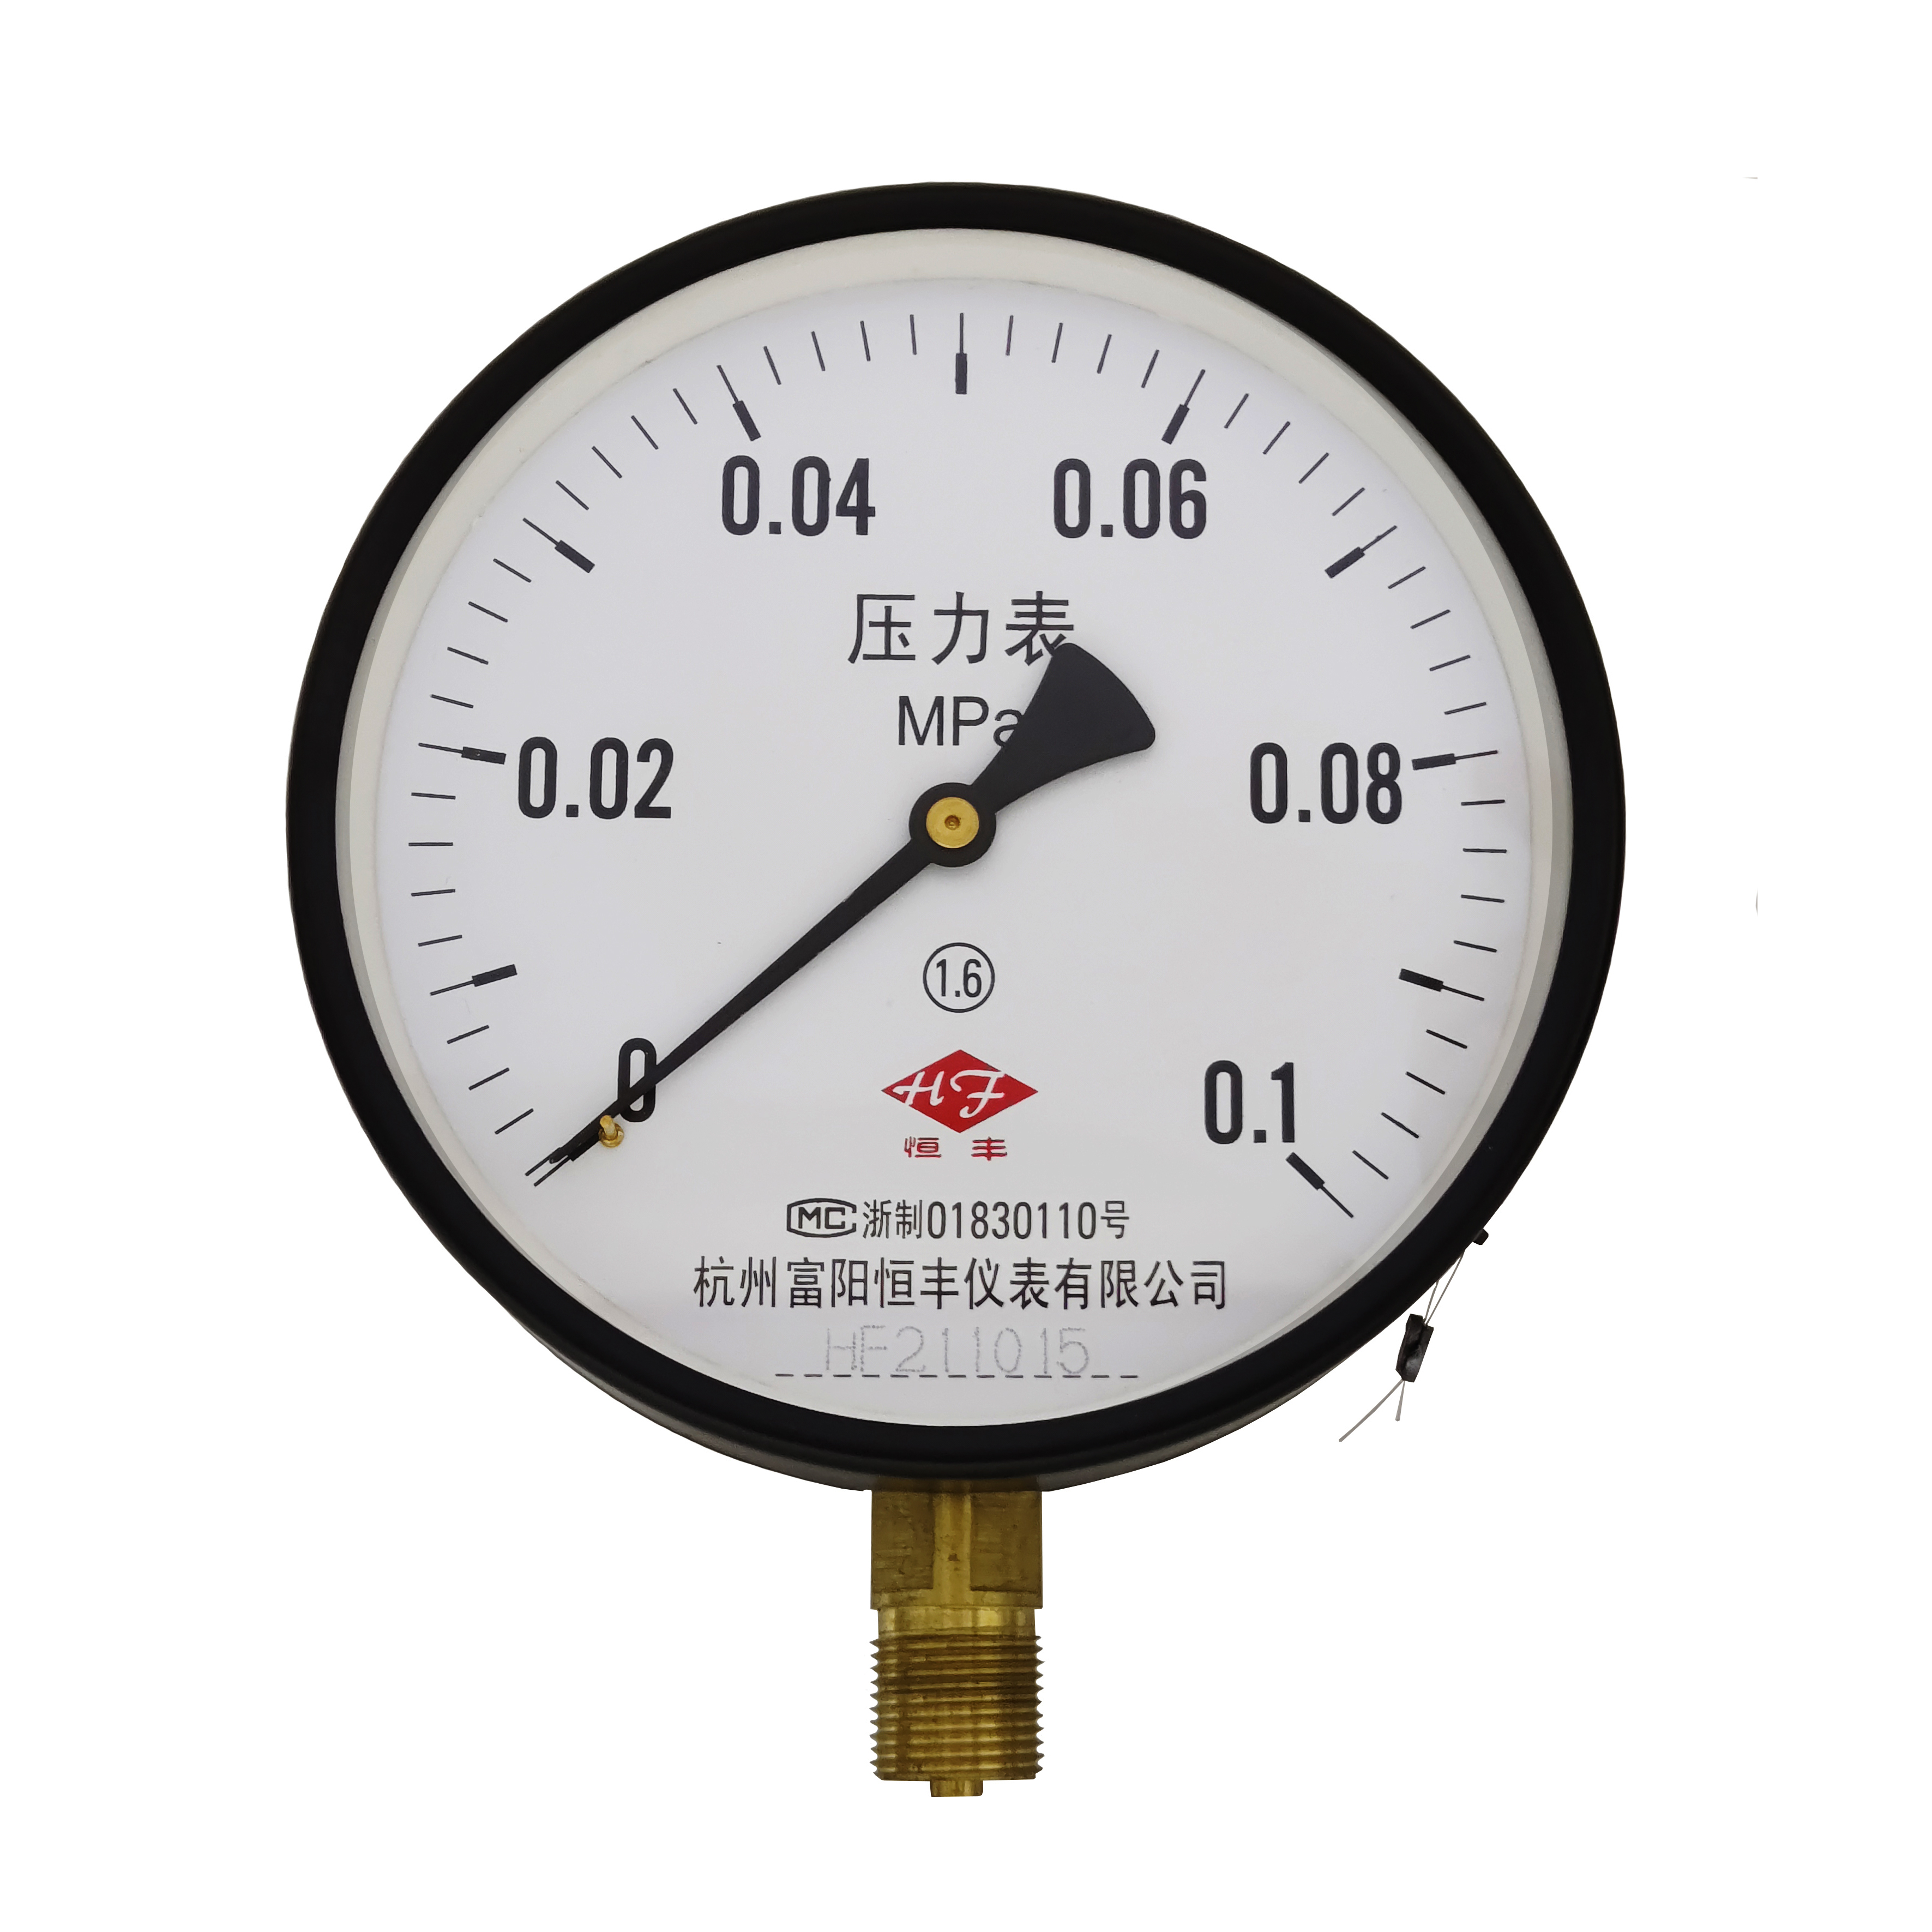 Y150 ordinary pressure gauge